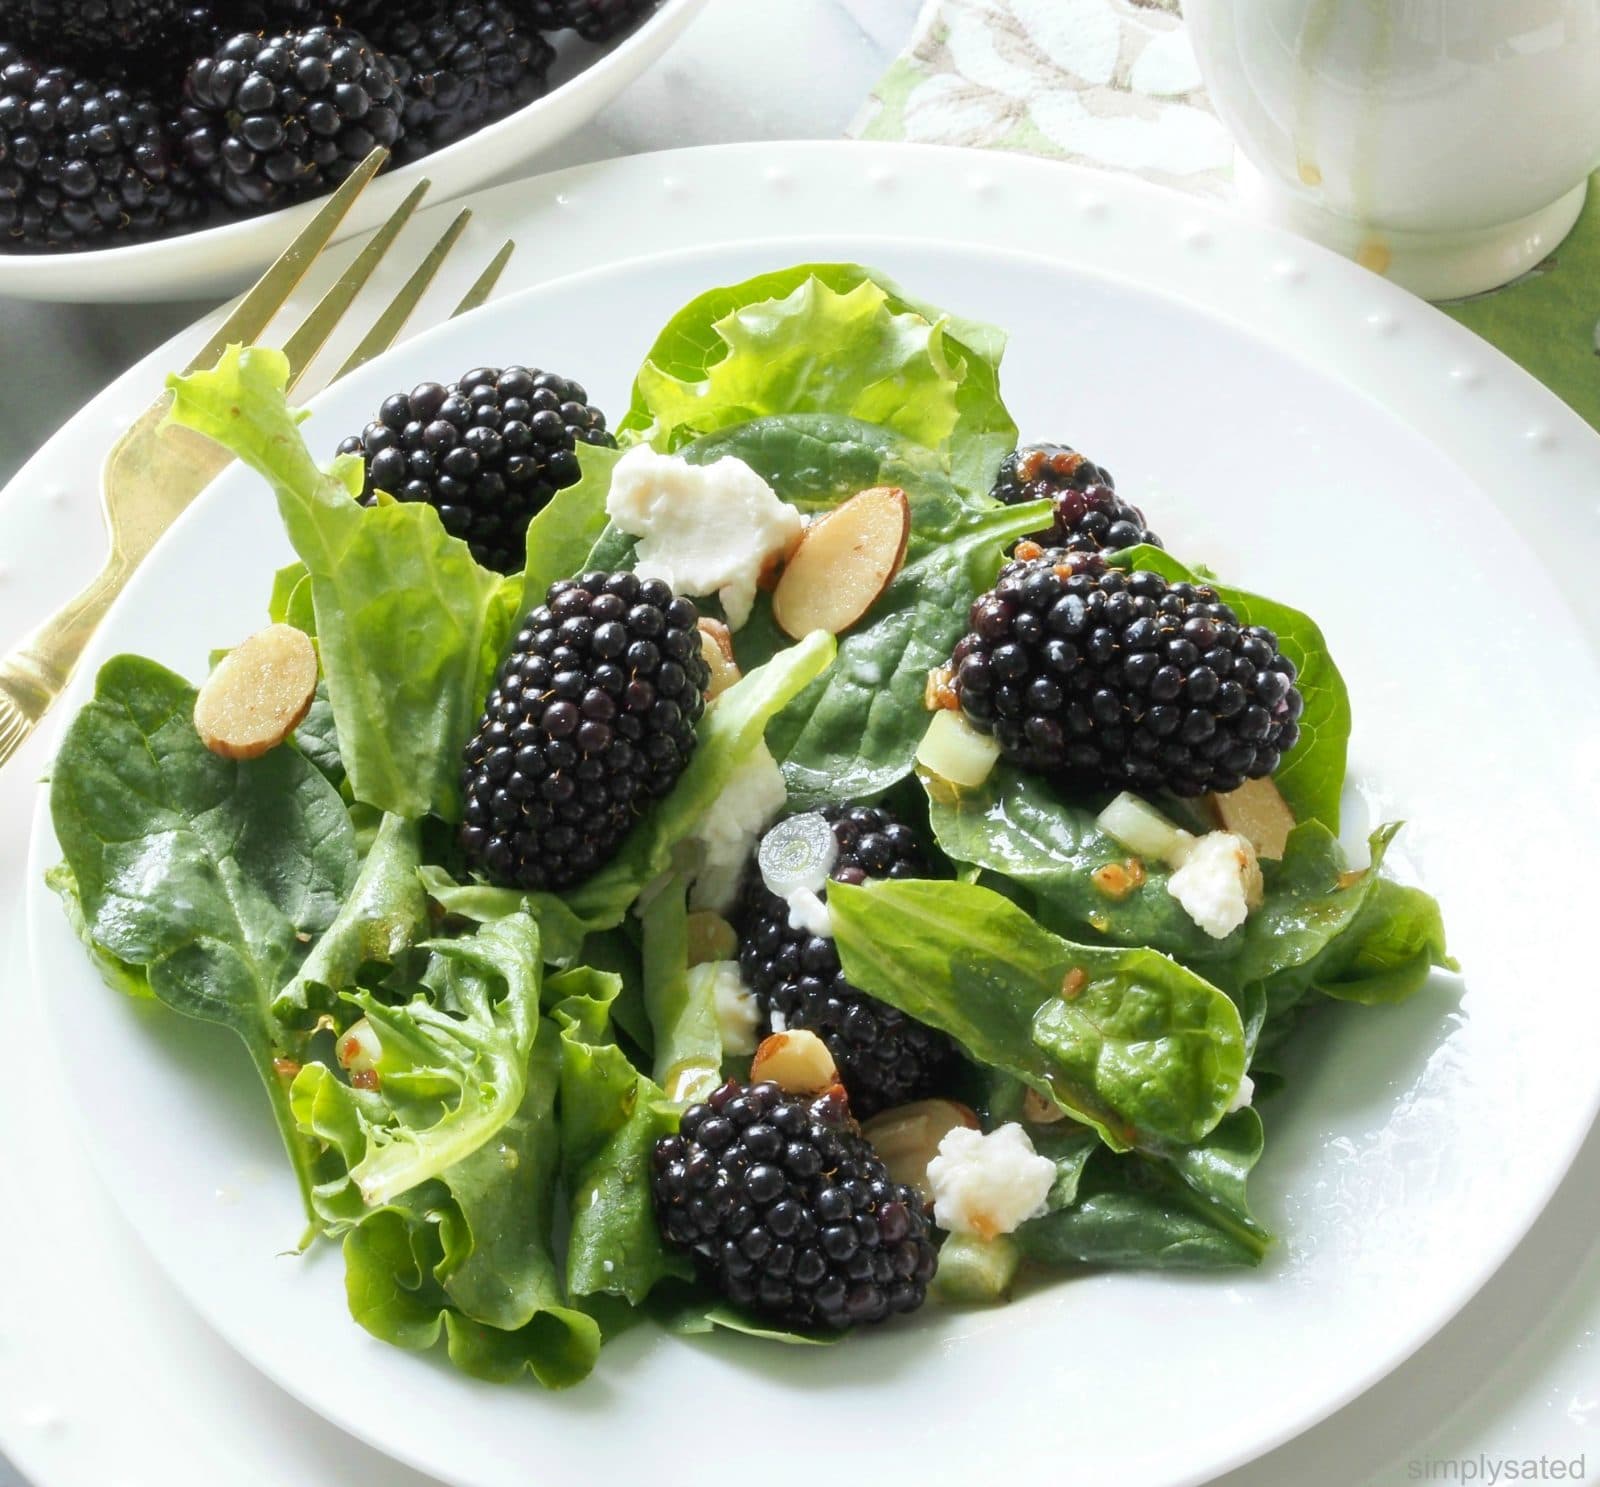 Blackberries & Greens Salad - a fantastic, healthy salad with blackberries, greens & almonds. www.simplysated.com